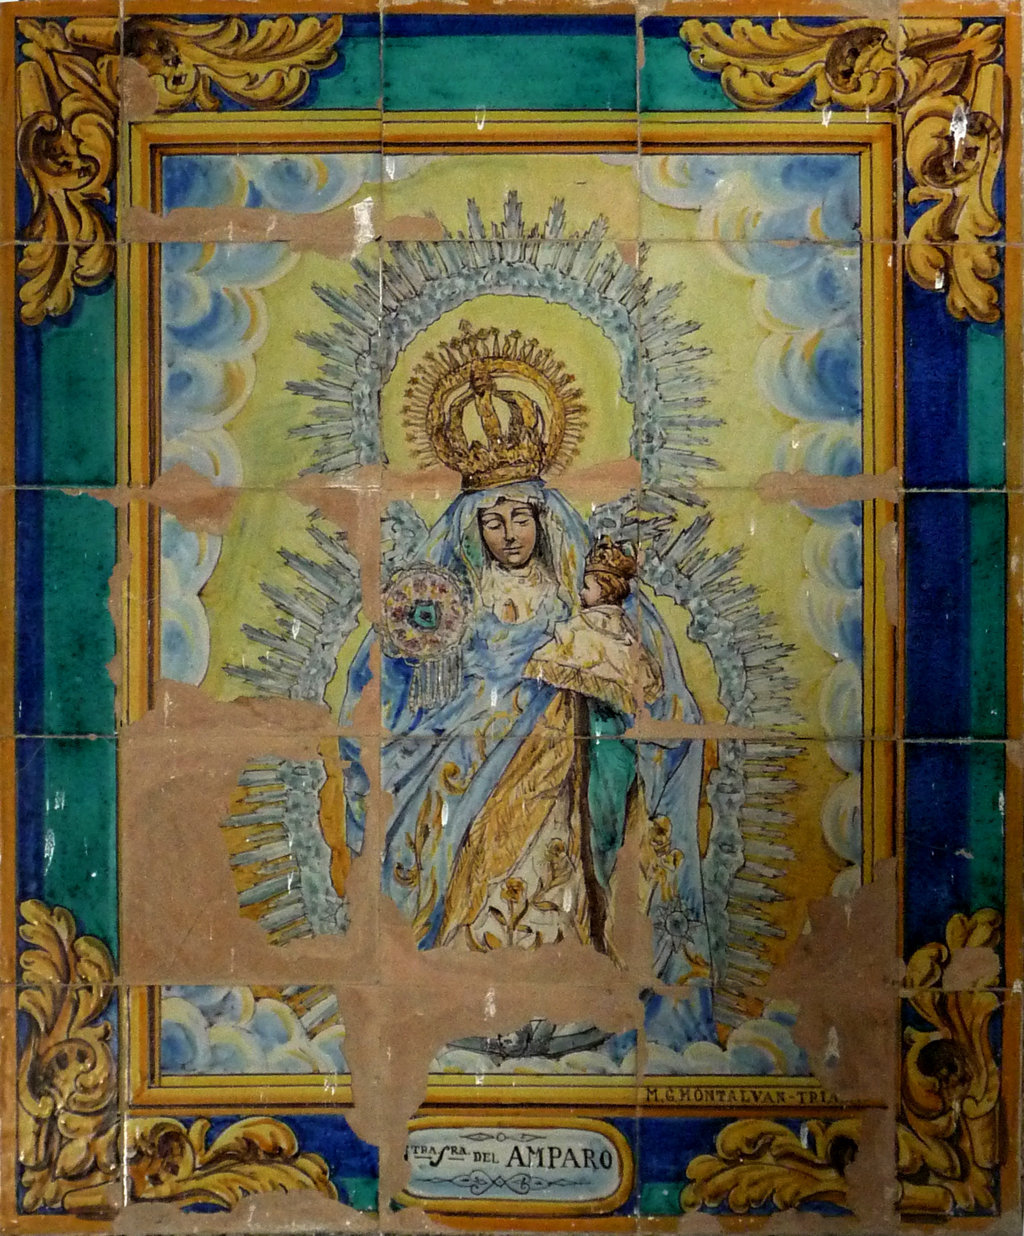 01979. Retablo cerámico. Virgen del Amparo. Almensilla. Sevilla.